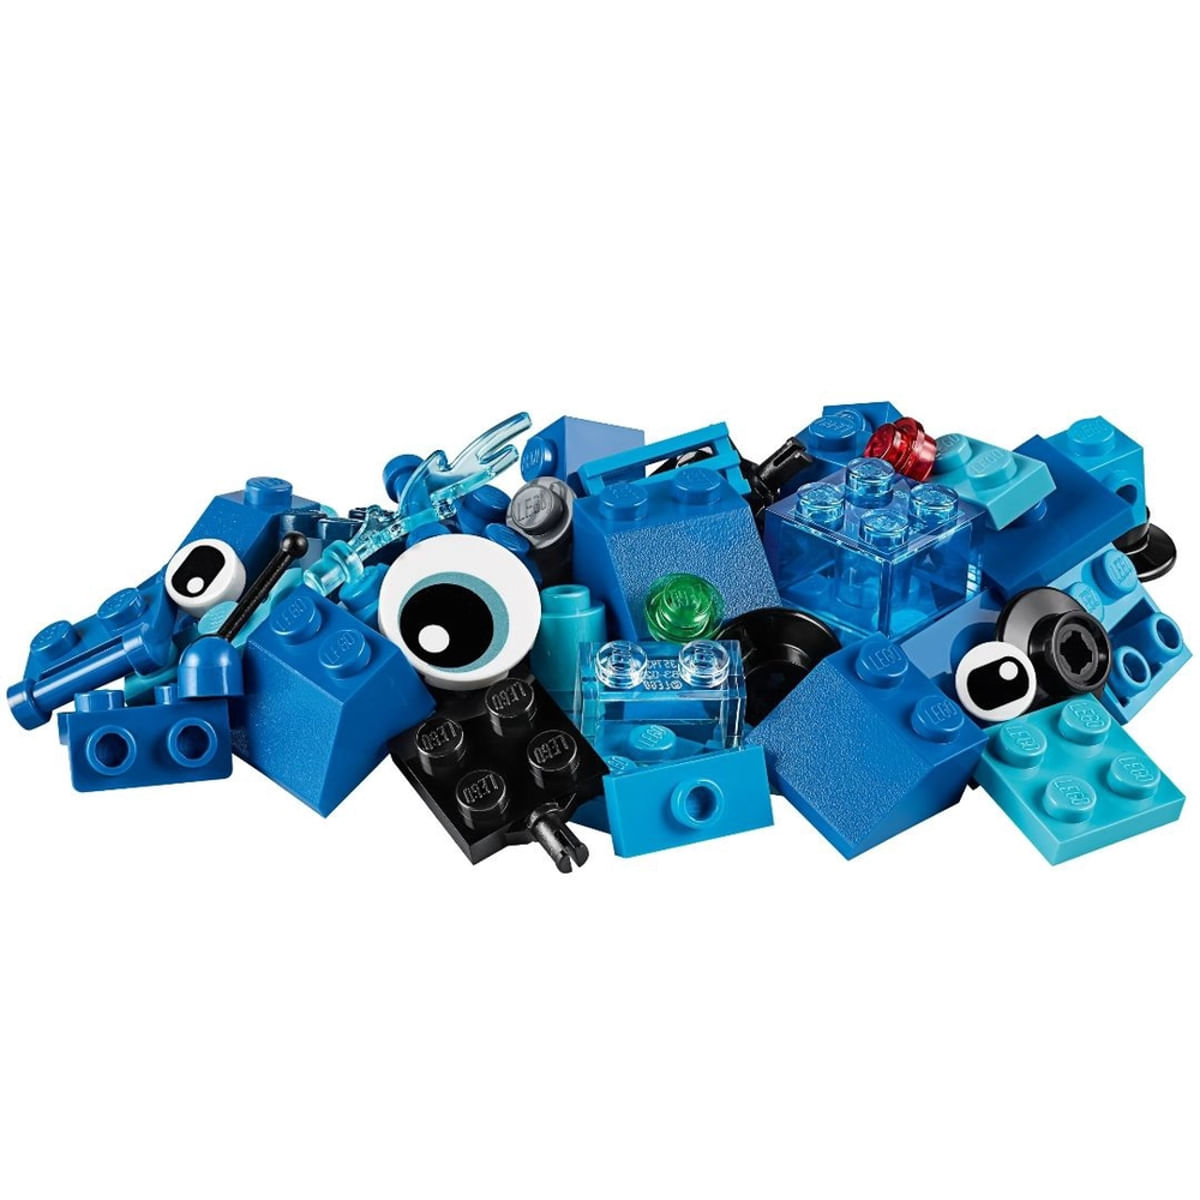 bl-pecas-criativas-lego-azul-11006-2.jpg